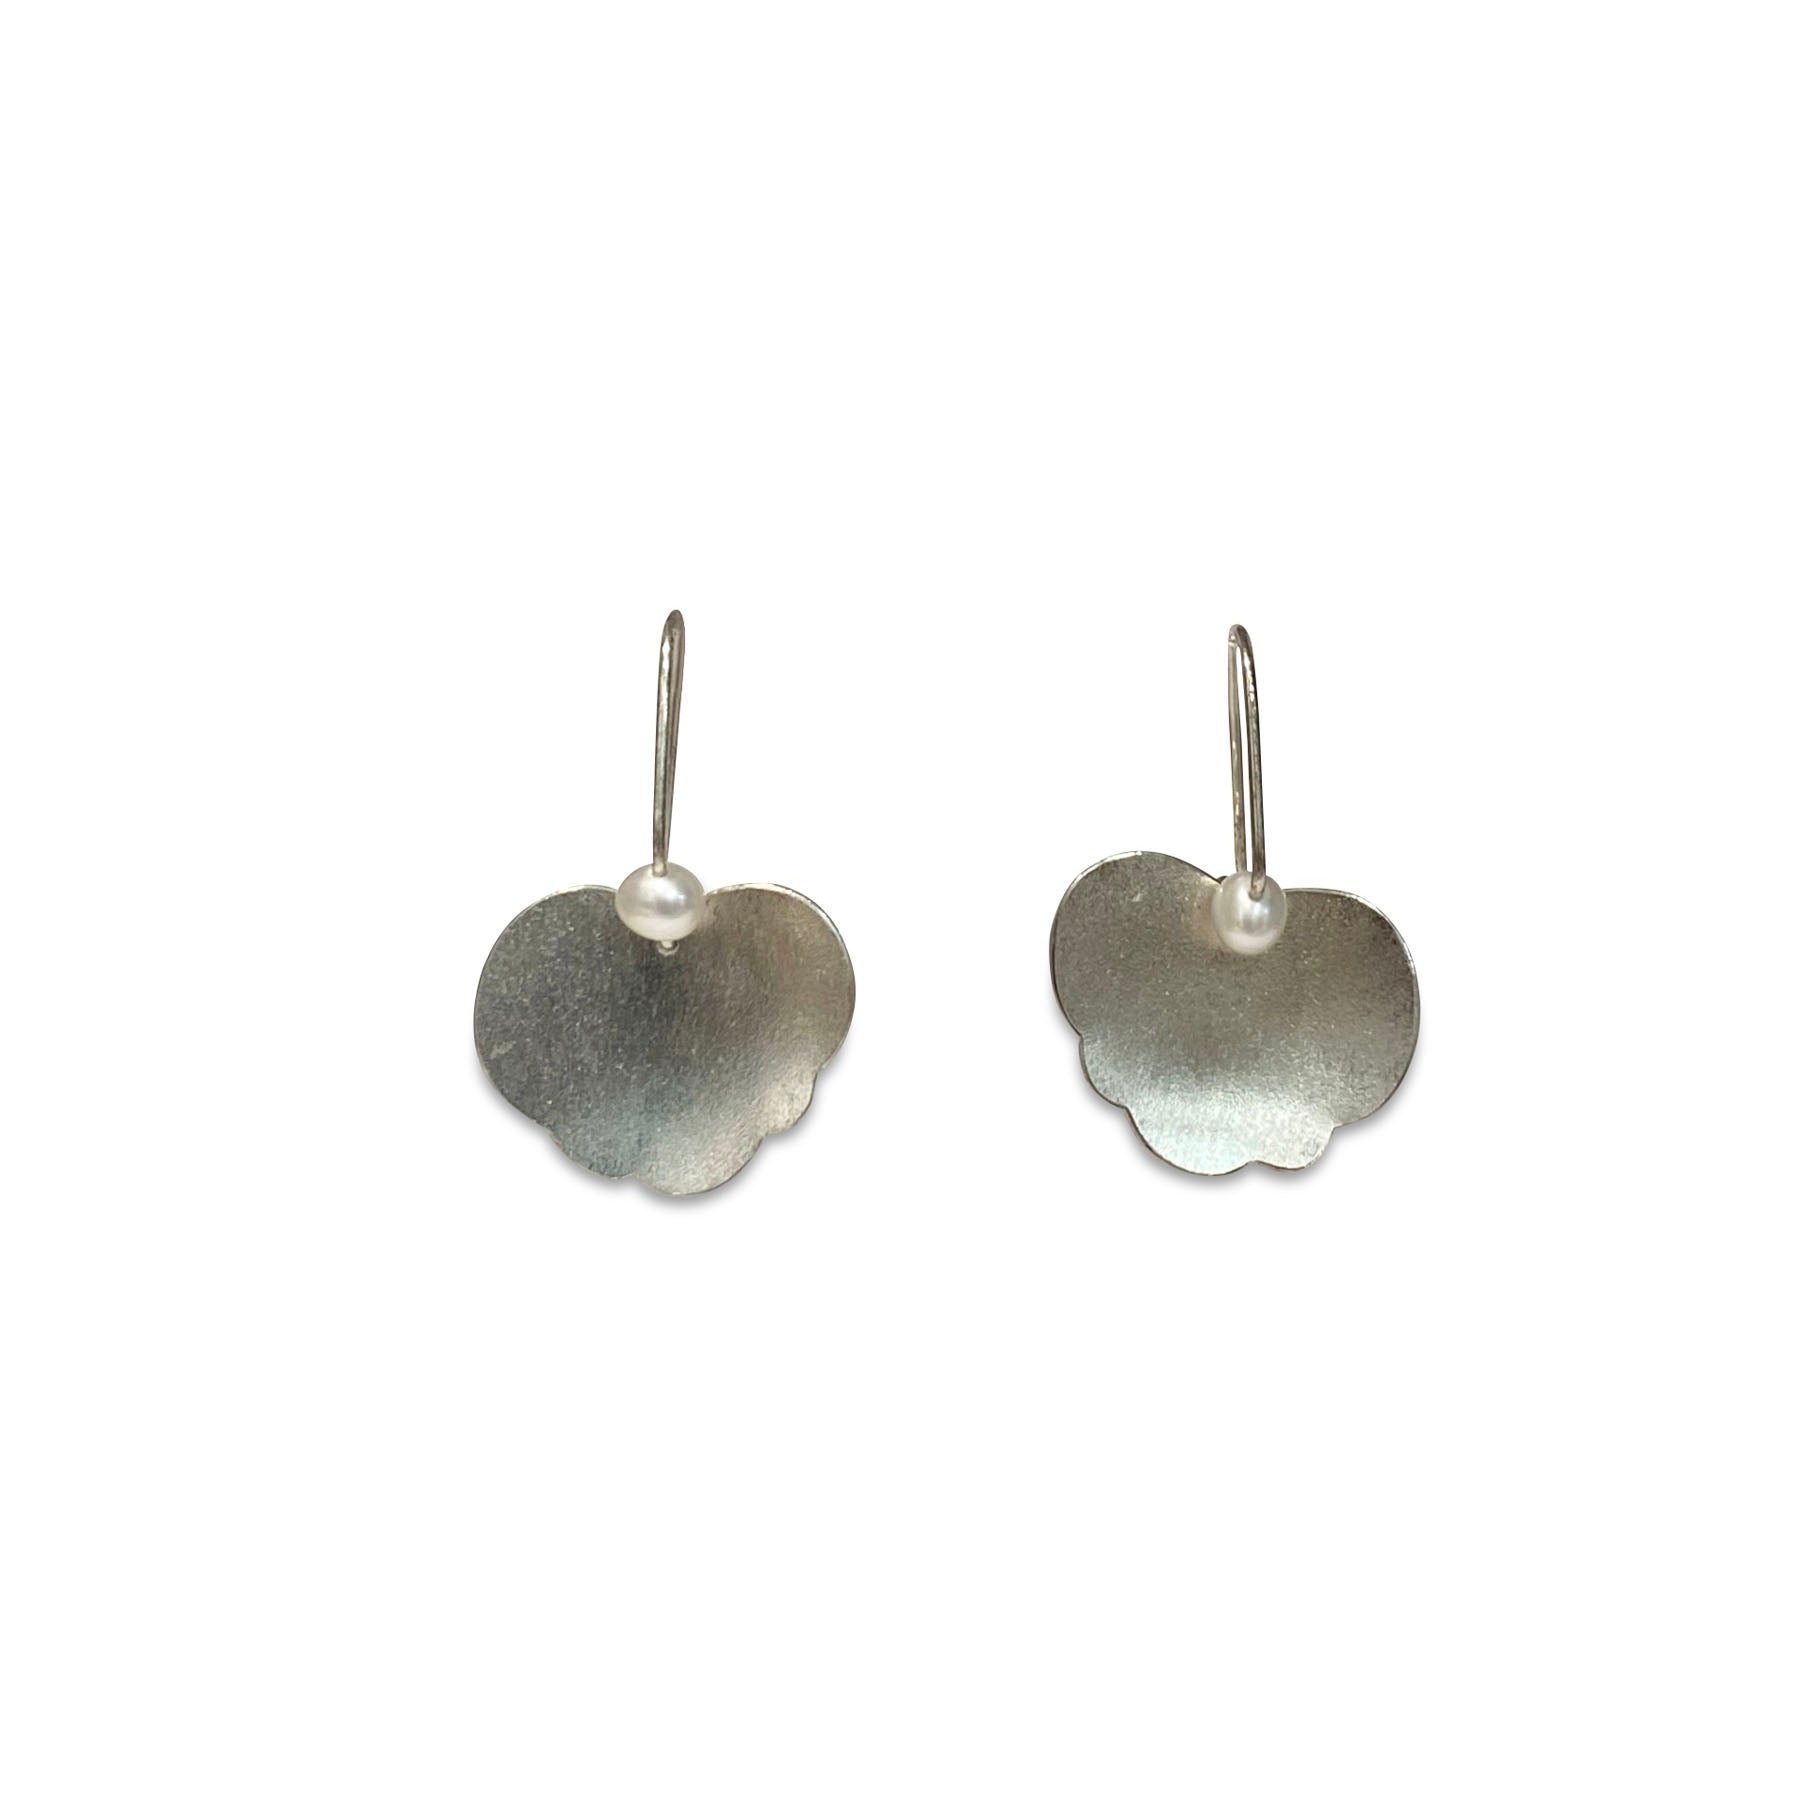 XS Crinkle Geranium Earrings Pearls